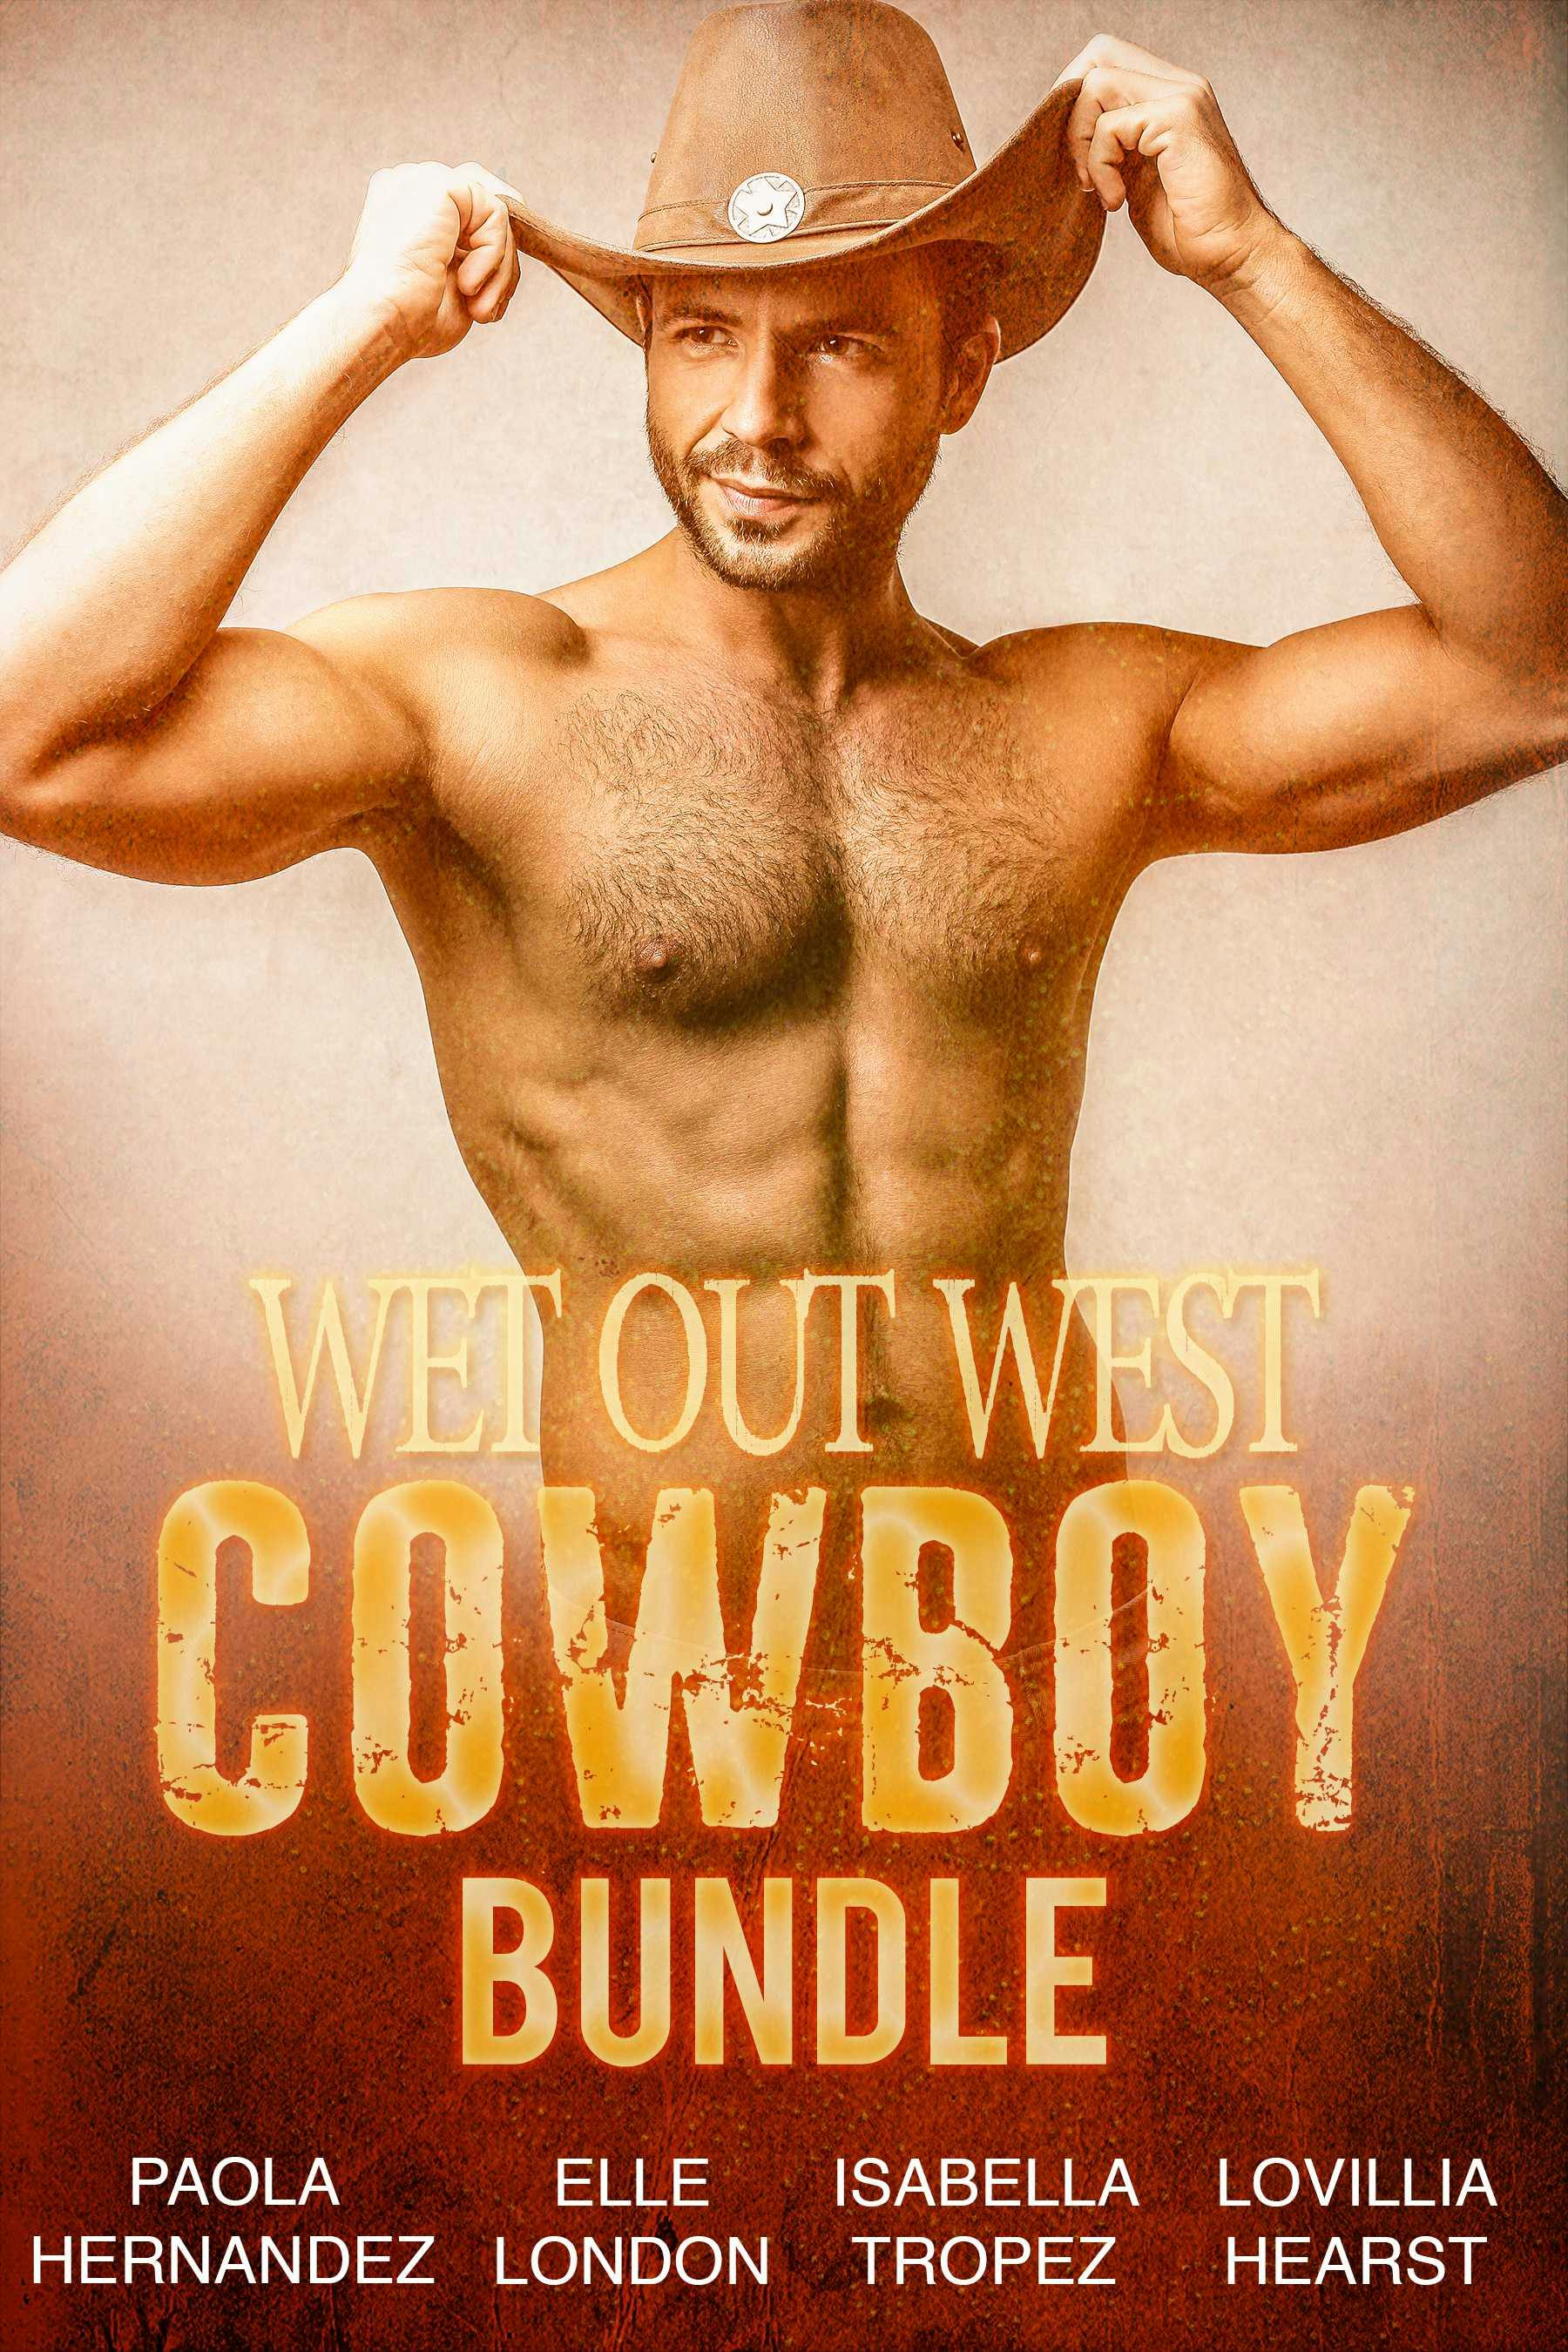 Wet Out West Cowboy Bundle - undefined